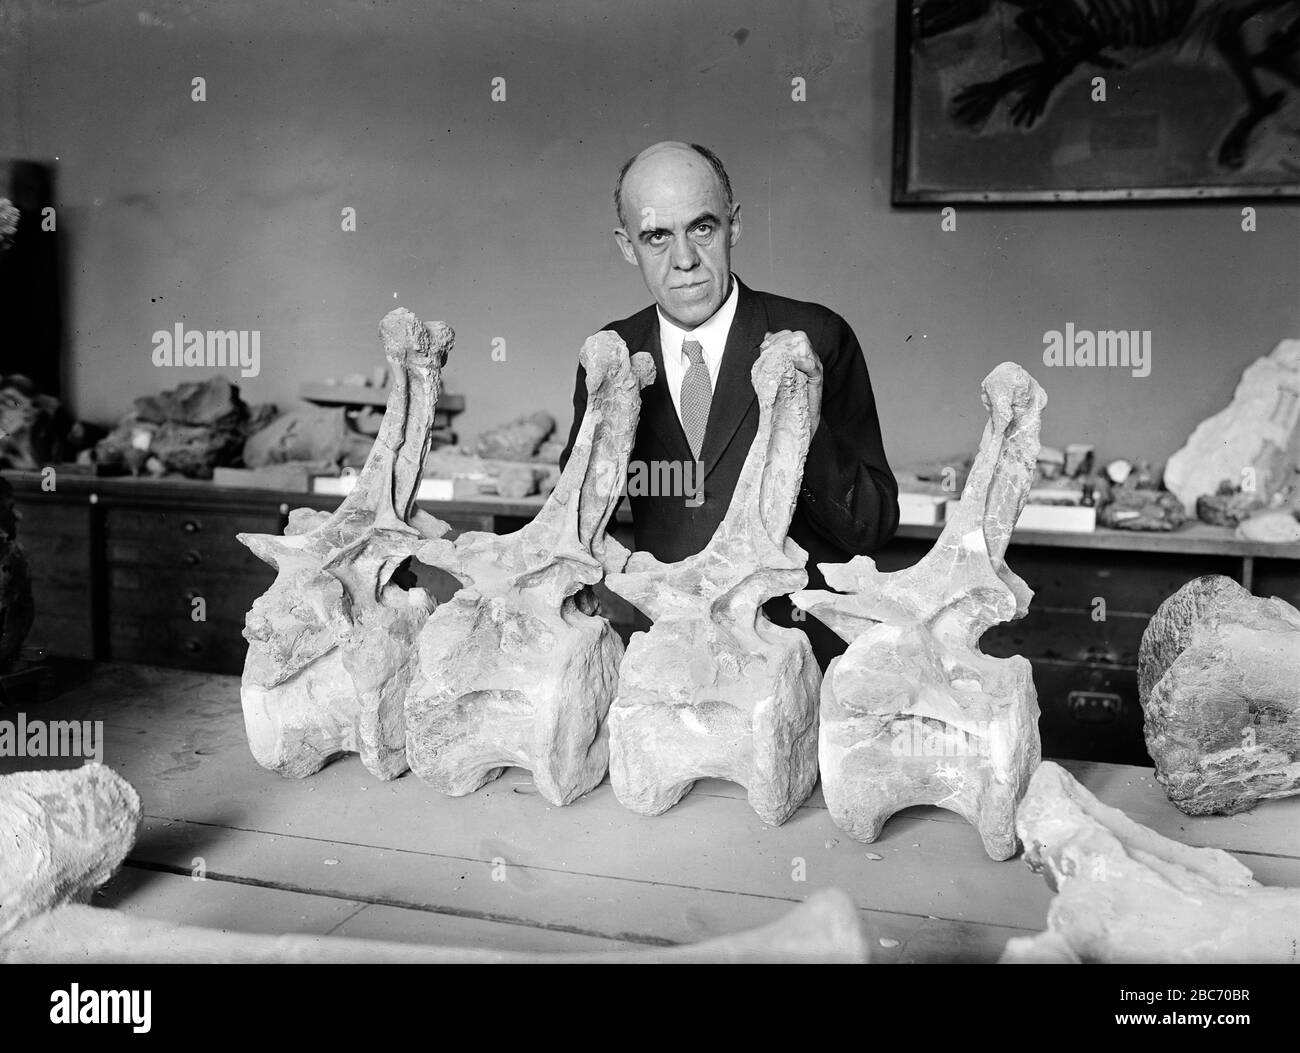 'Título original: Profesor Charles Gilmore de la institución Smithsonian con dinosaurio Diplodocus. Gilmore posará con vértebras caudales asignadas a Diplodocus longus, del espécimen USNM 10865. Gilmore describió el ejemplar y lo montó en el Smithsonian en 1932.; 25 de septiembre de 1924 (publicación original). Subido el 22 de junio de 2008; SV-POW, Shorpy. Originalmente publicado en el Washington Post, 24 de septiembre de 1924, en el artículo la cola de los dinosaurios causa flurry en Smithsonian. Esta imagen fue cargada desde Shorpy.com, un sitio de fotos-blog especializado en fotografía de época. URL de la fuente: 3541 Shorp Foto de stock